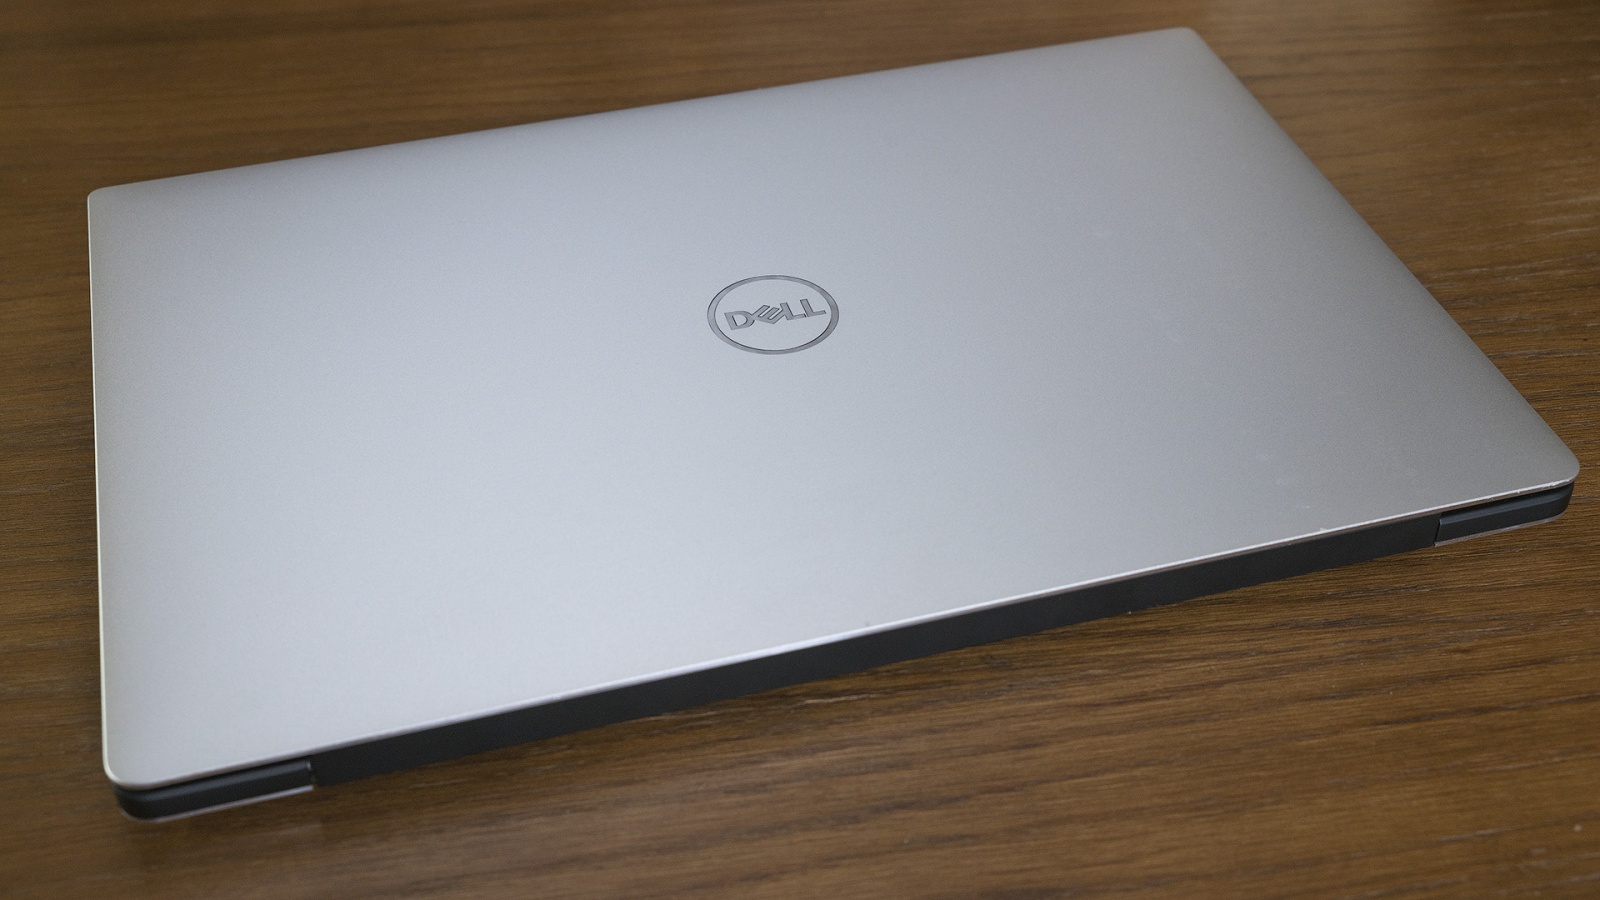 Обзор ноутбука Dell XPS 13 9370: лёгкий, красивый, быстрый - 5